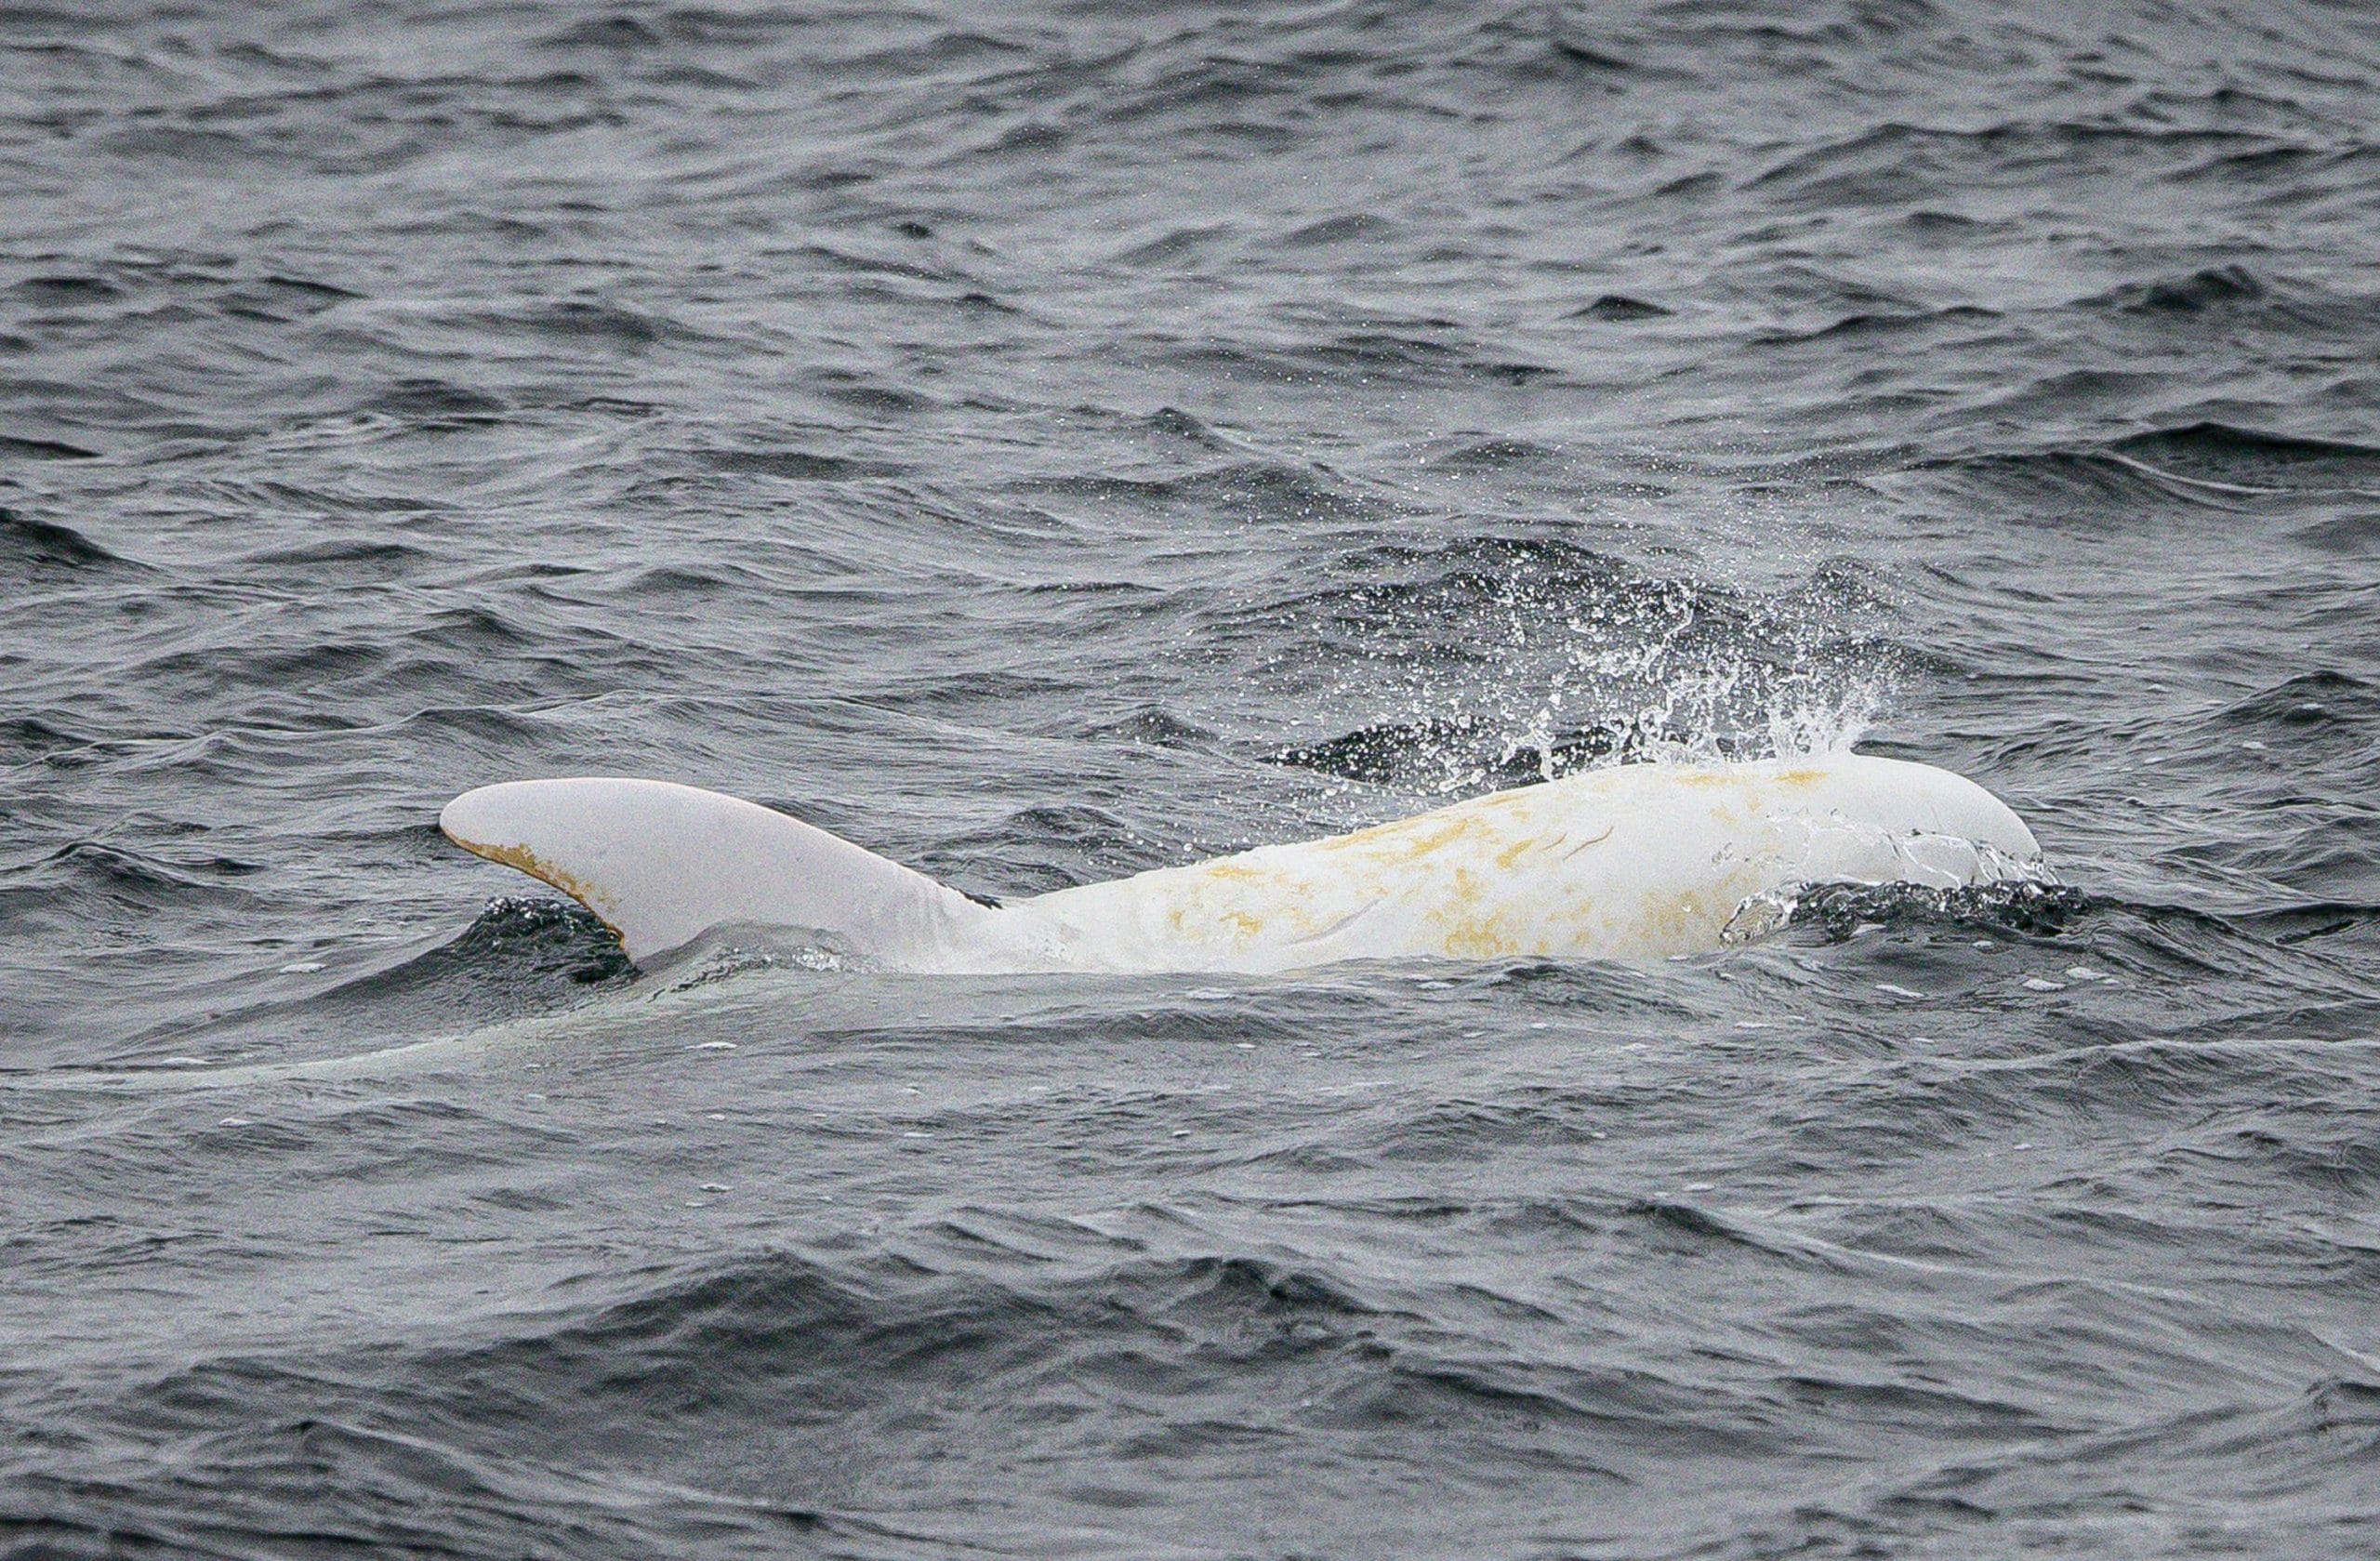 Casper the albino Risso's dolphin. Credit: WDC NA